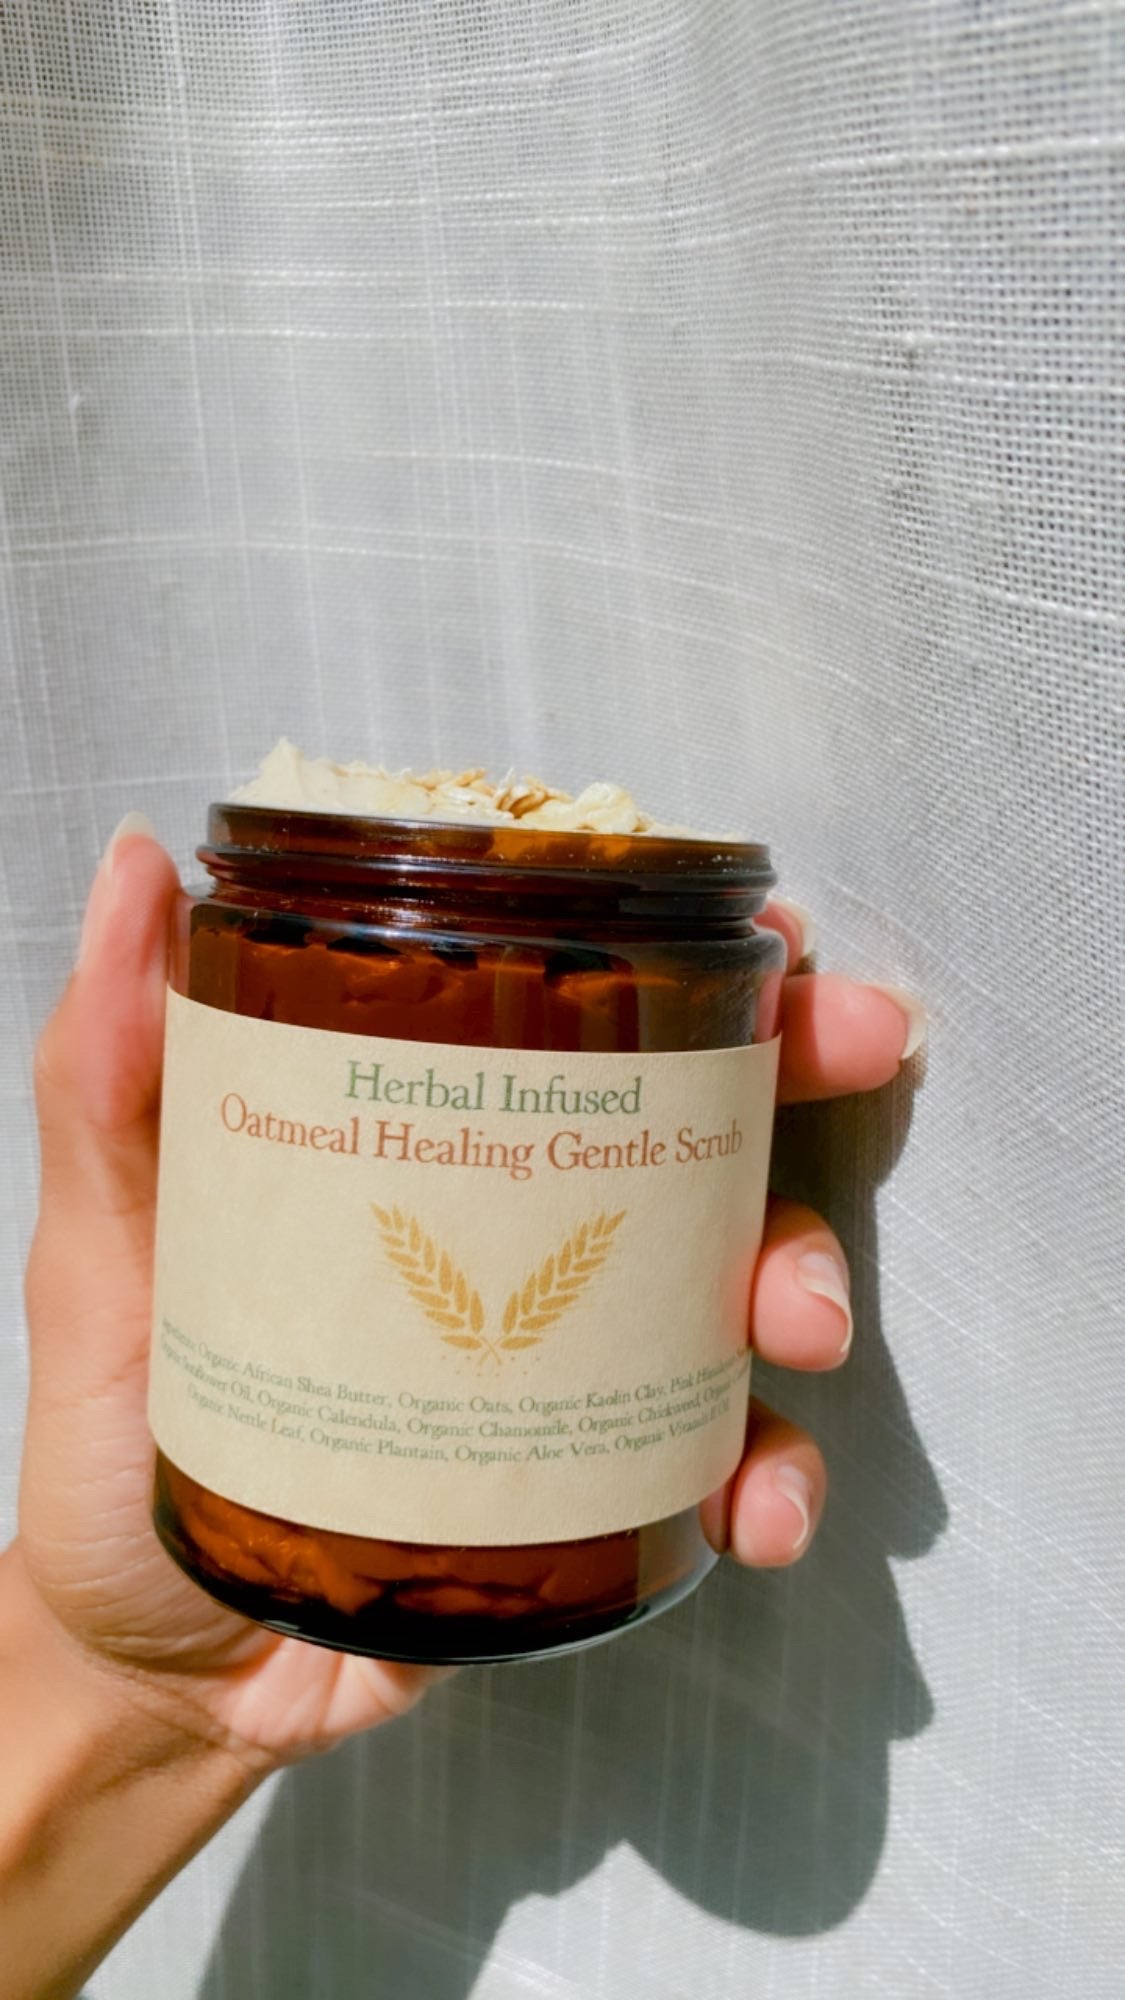 Herbal Infused Oatmeal Healing Gentle Scrub